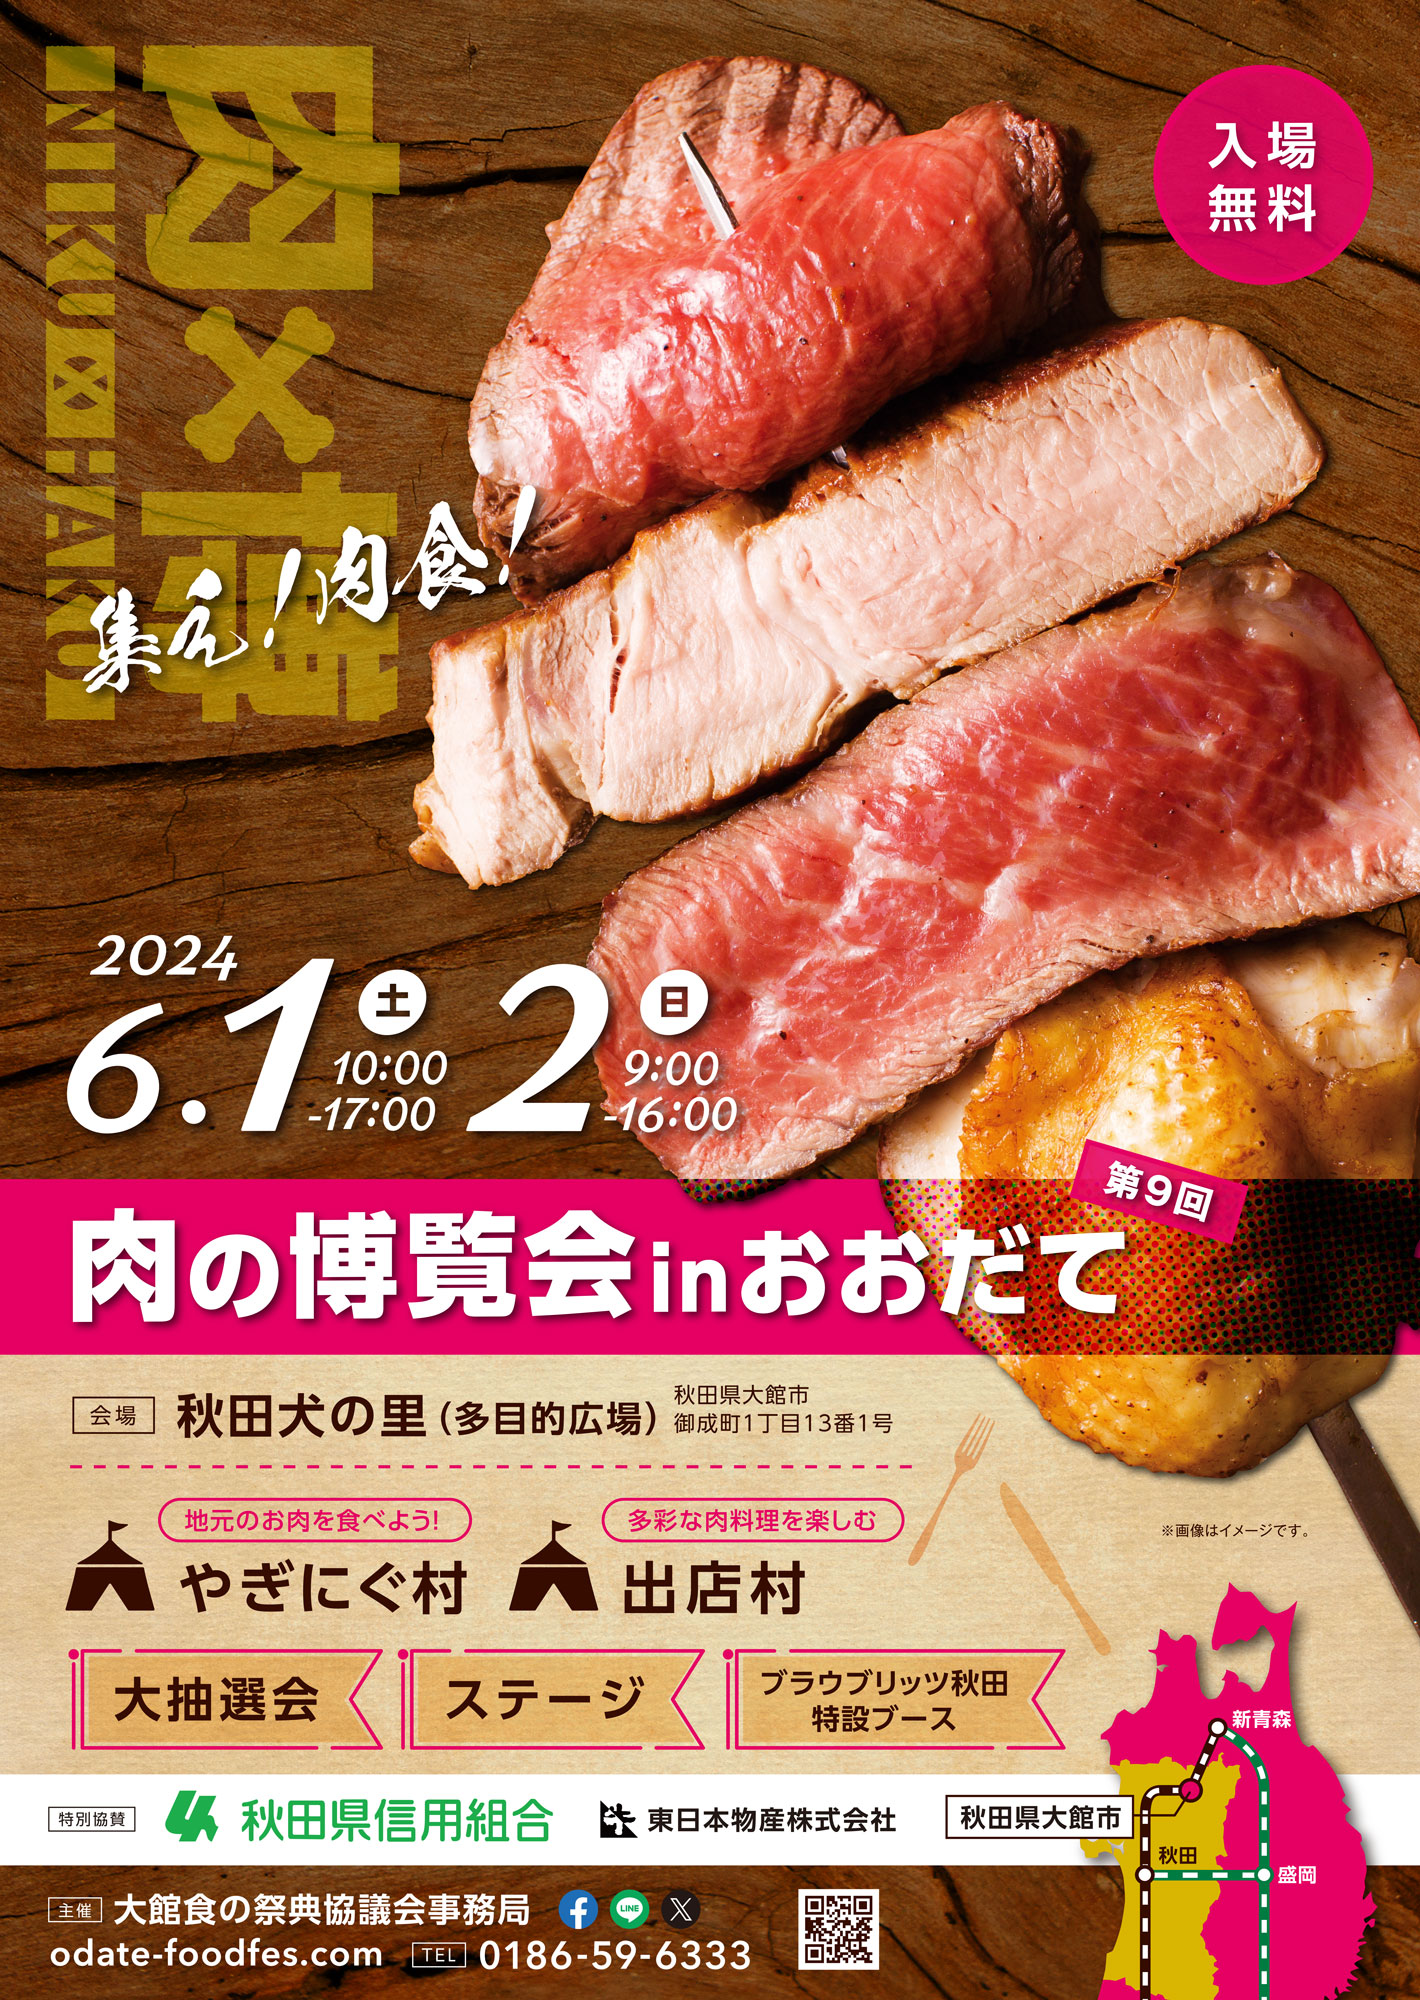 【イベント】第9回「肉の博覧会inおおだて」の開催について